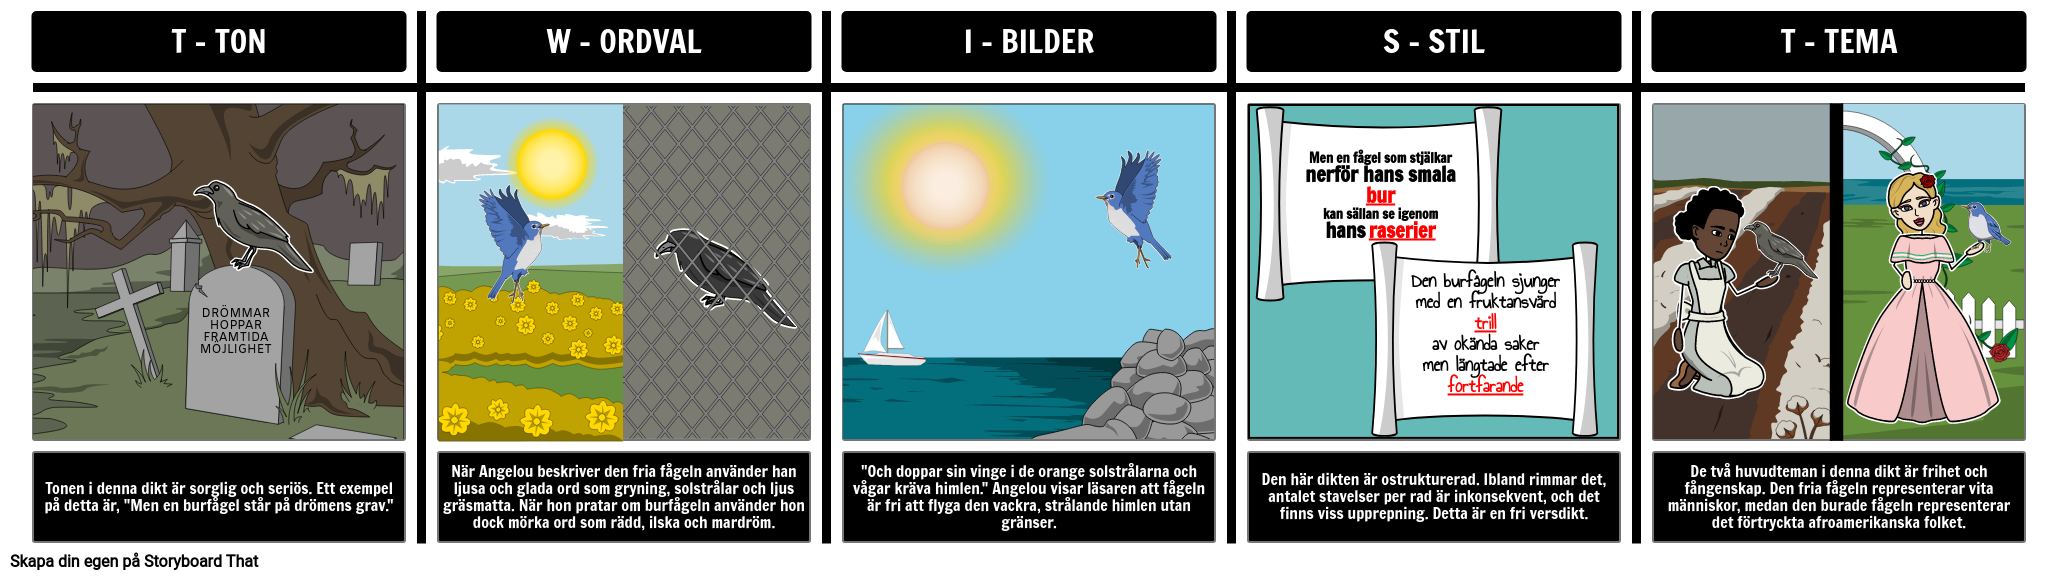 Caged Bird: Exempel på TWIST-analys